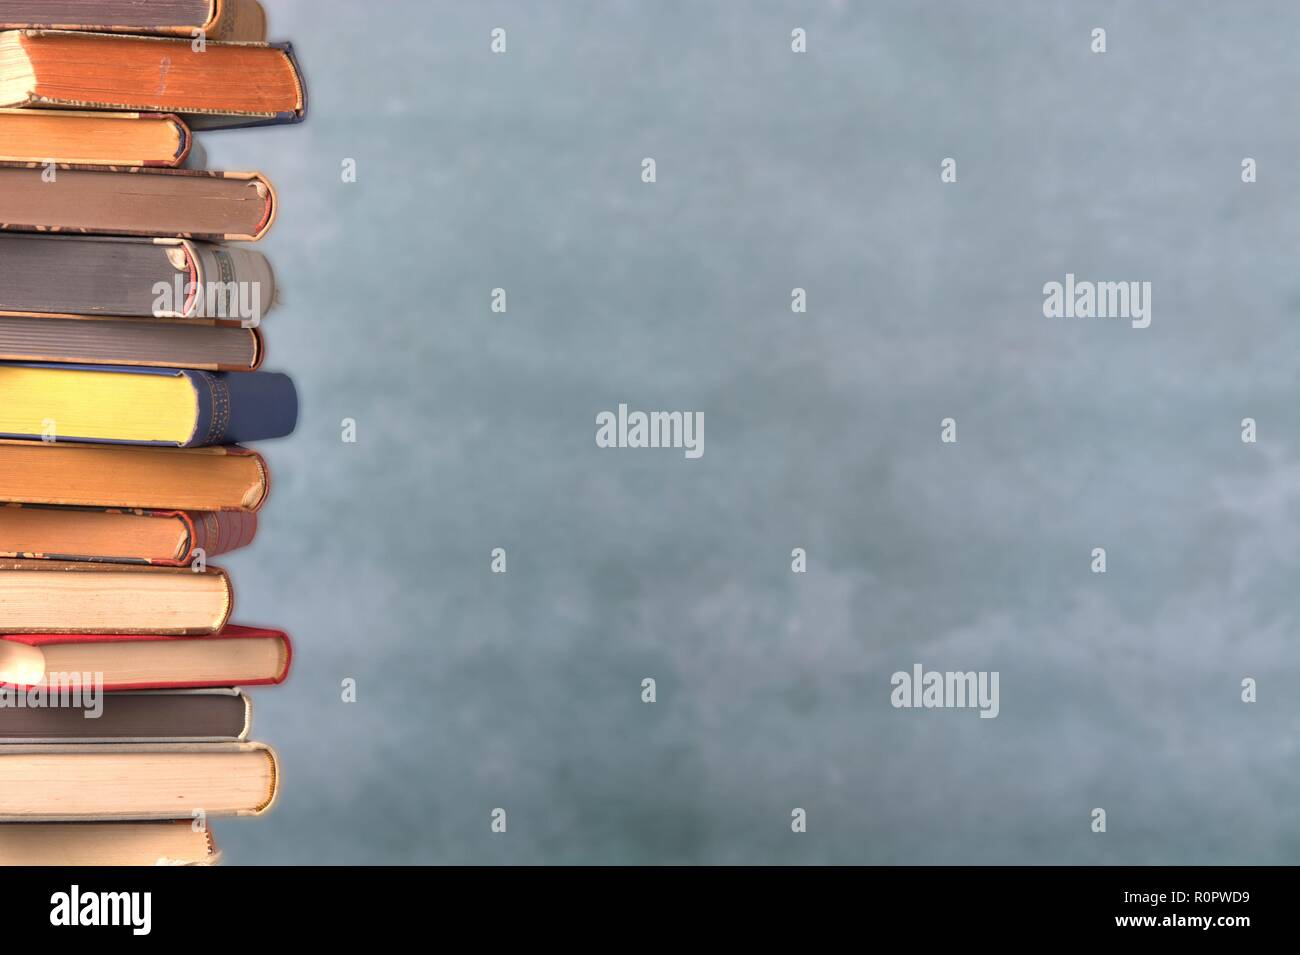 Germany. 05th Nov, 2018. Ein Stapel alter Bücher mit Einbänden am linken Bildrand vor einem neutralen, grün-melierten Hintergrund. | usage worldwide Credit: dpa/Alamy Live News Stock Photo